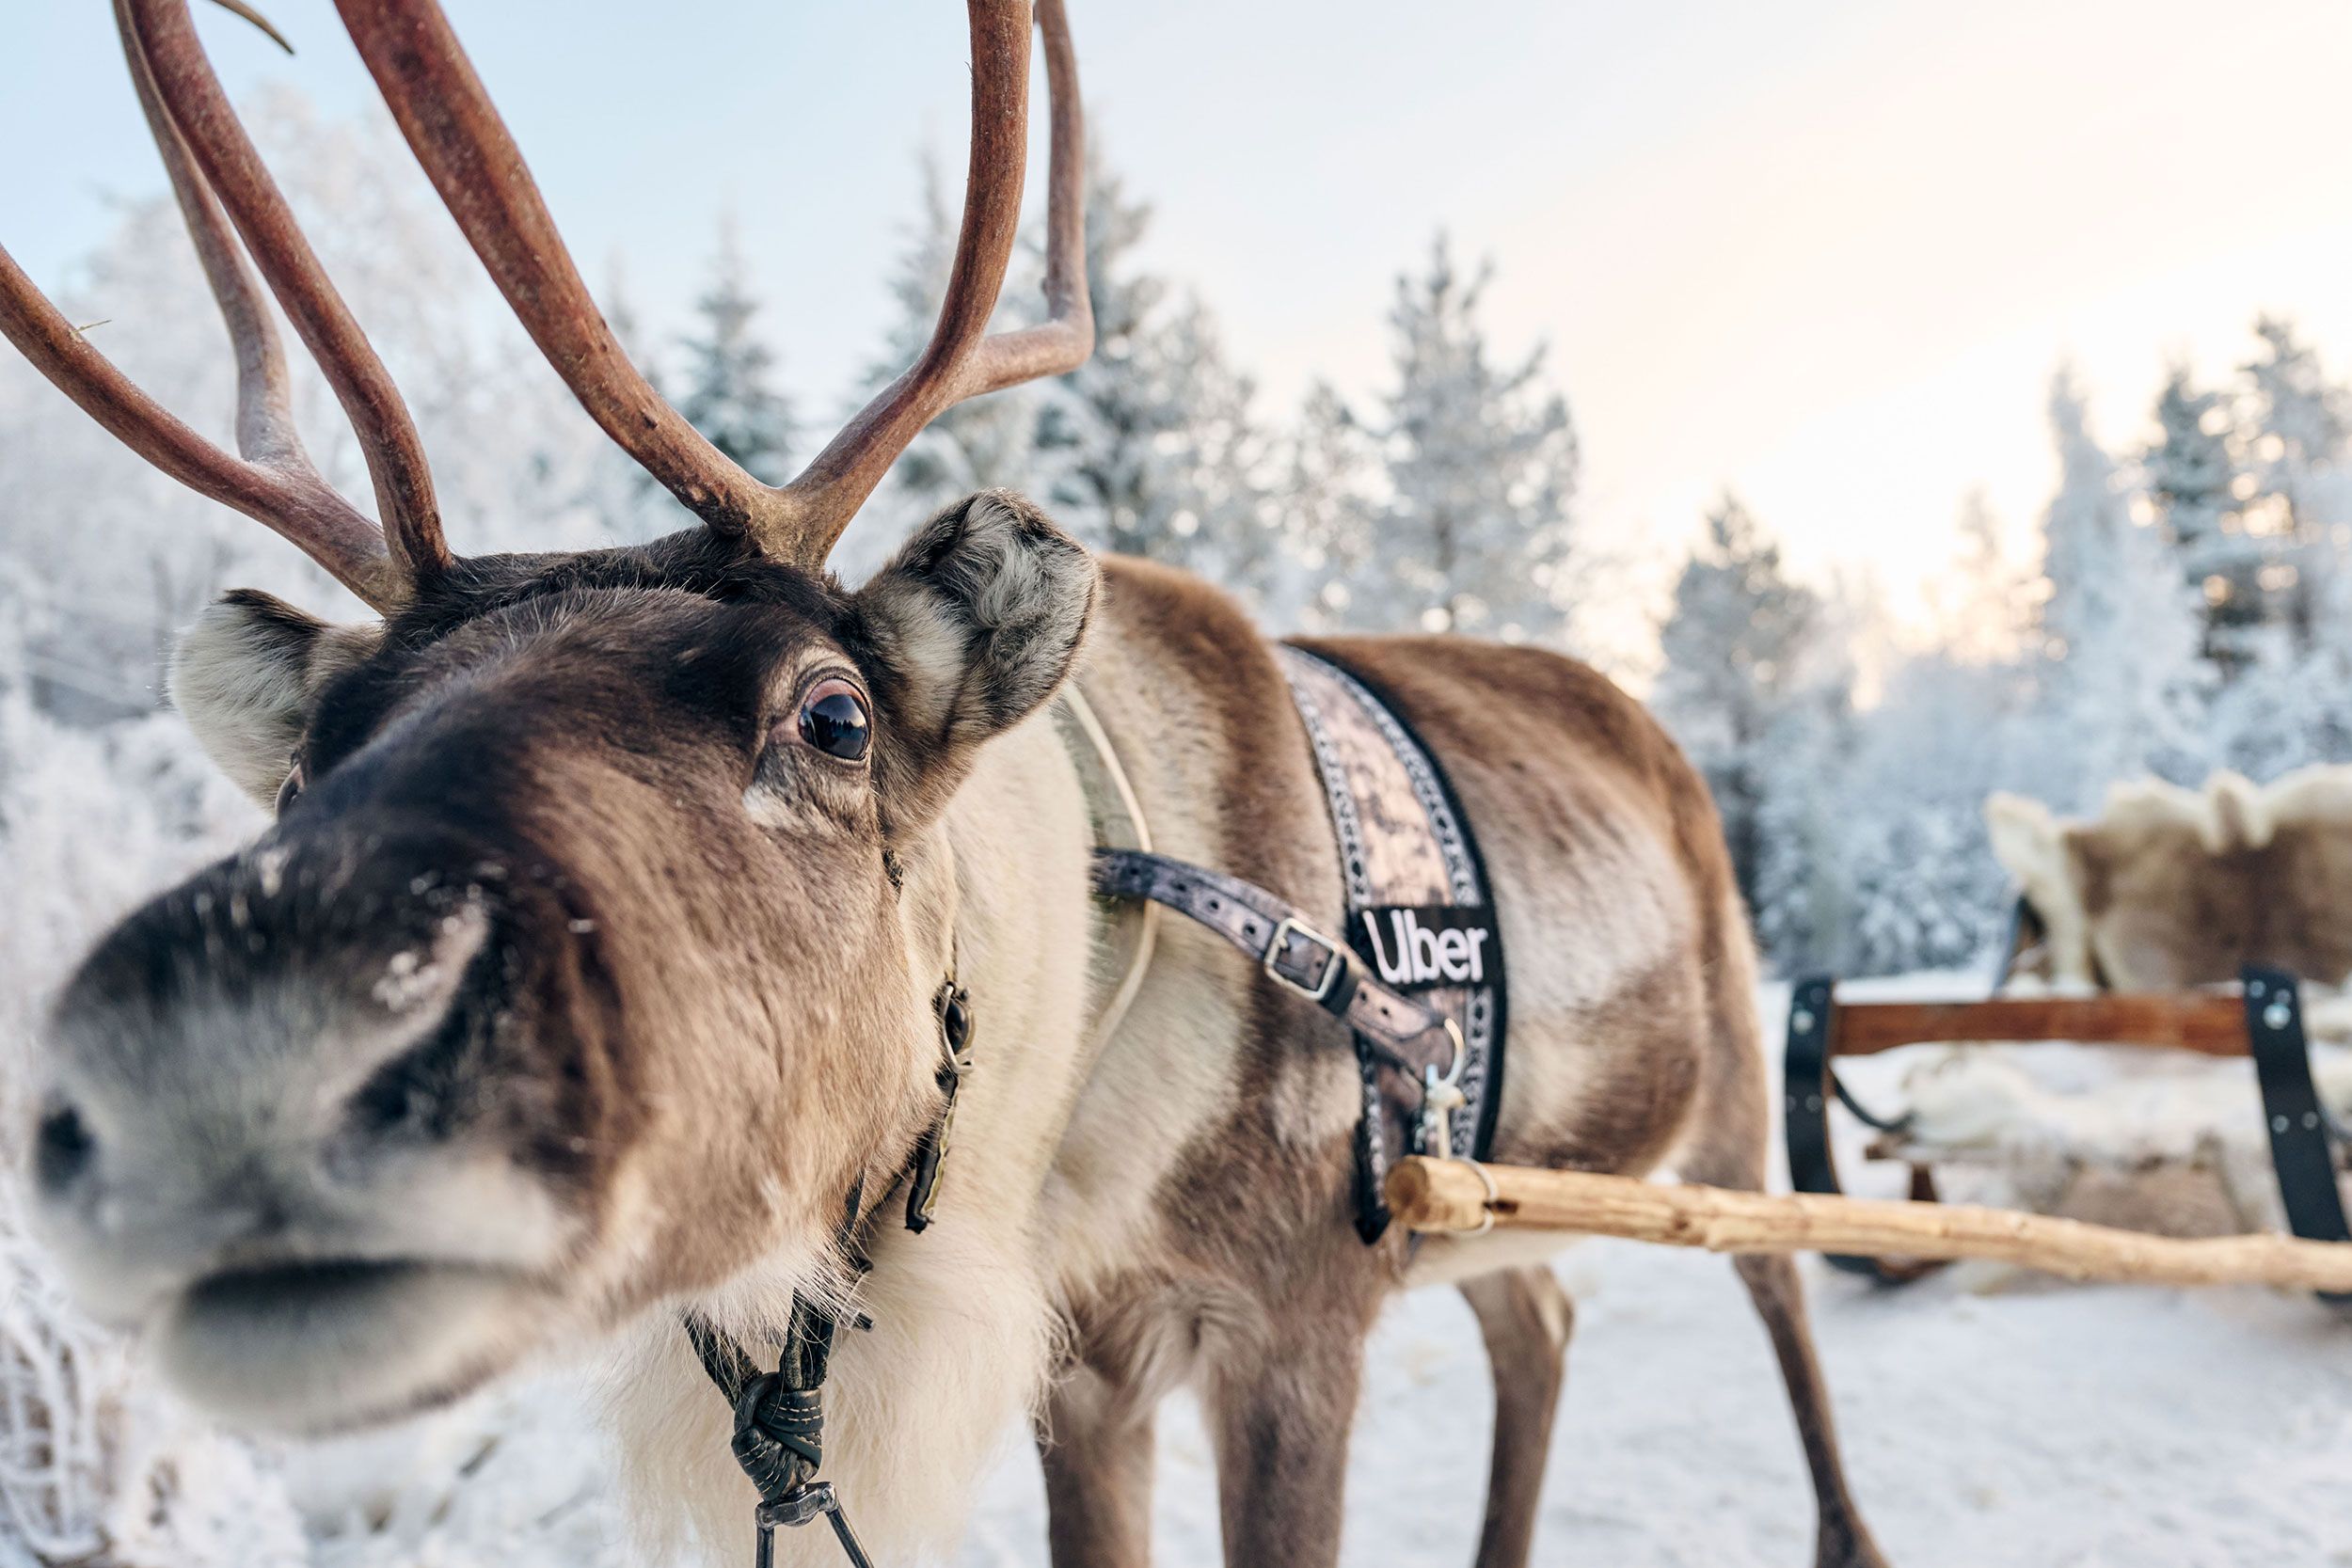 Estallar intervalo Generosidad Viajar a Laponia en diciembre: auroras, Papá Noel y Uber trineo